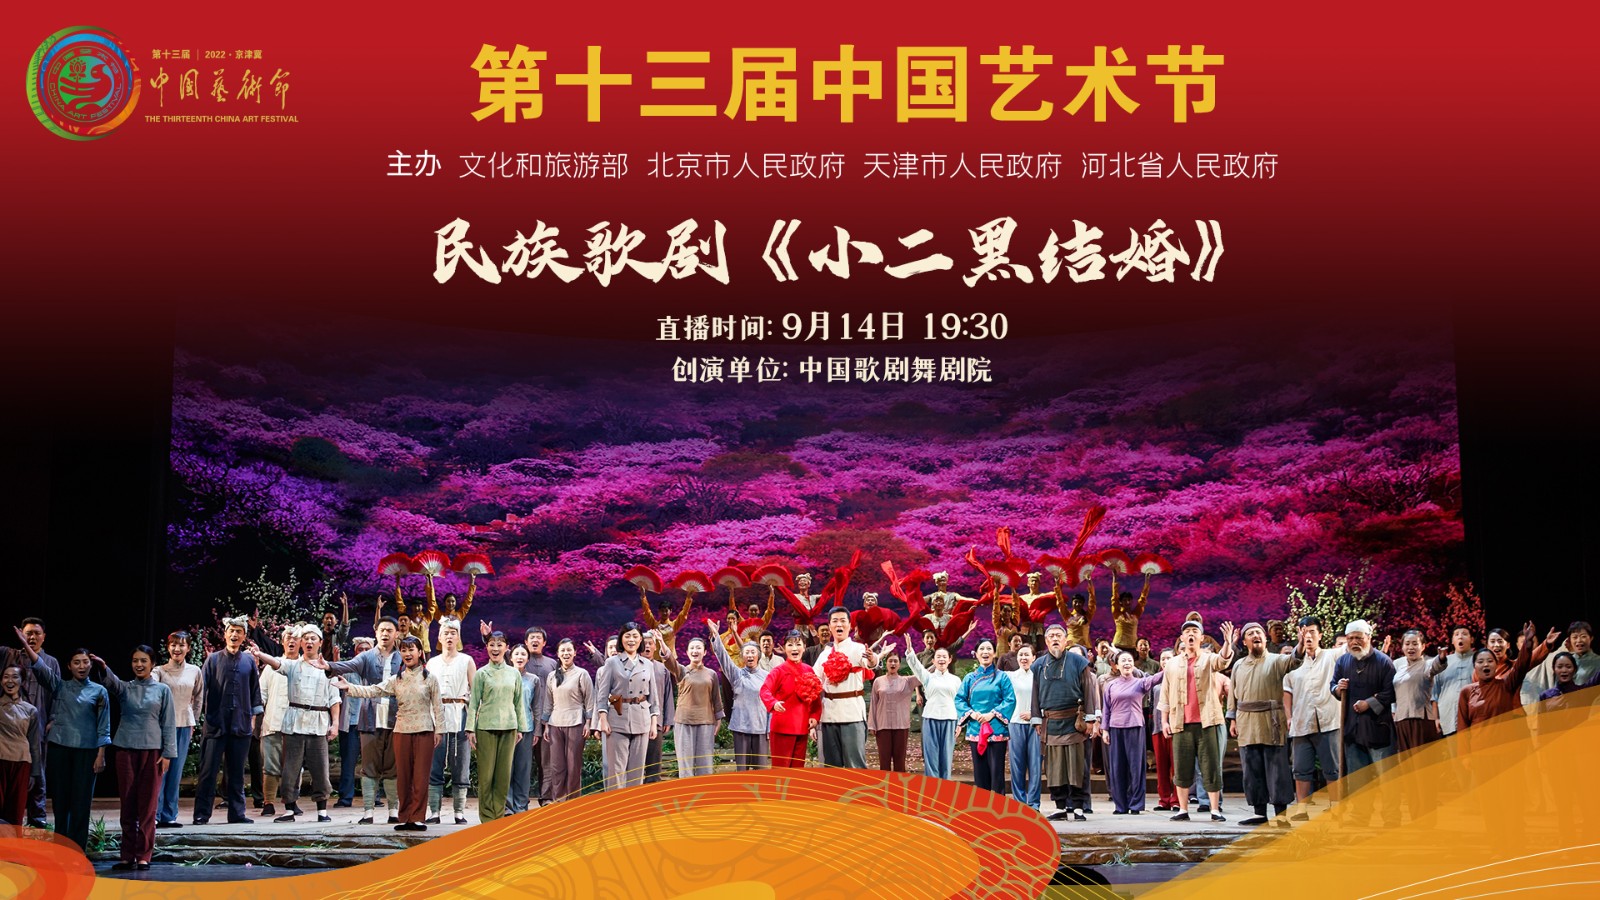 第十三届中国艺术节参评剧目展演:民族歌剧《小二黑结婚》